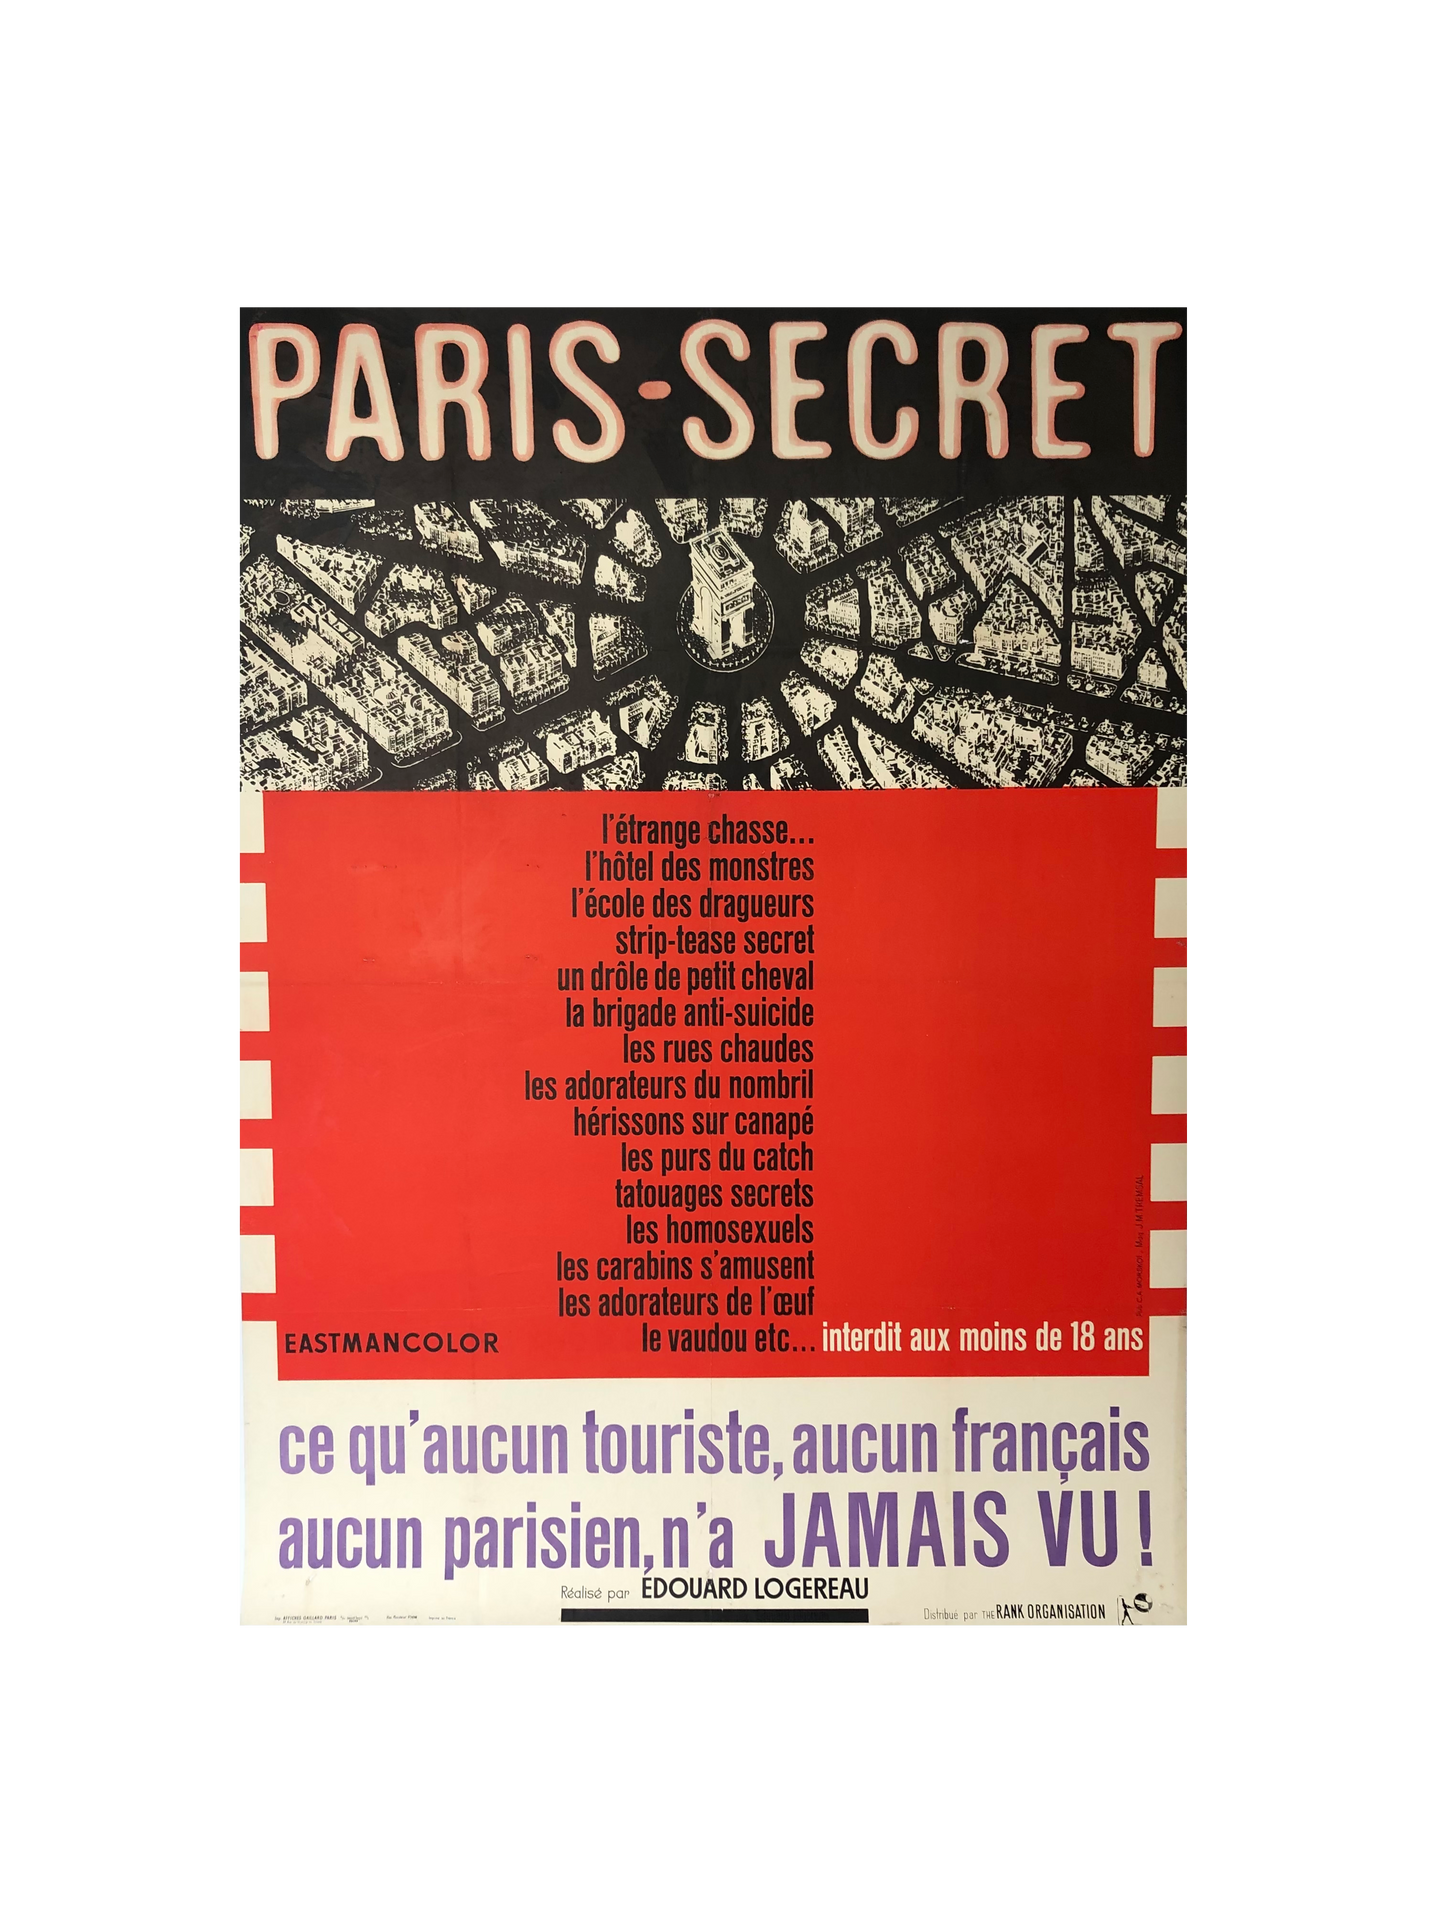 Paris-Secret Original Film Poster